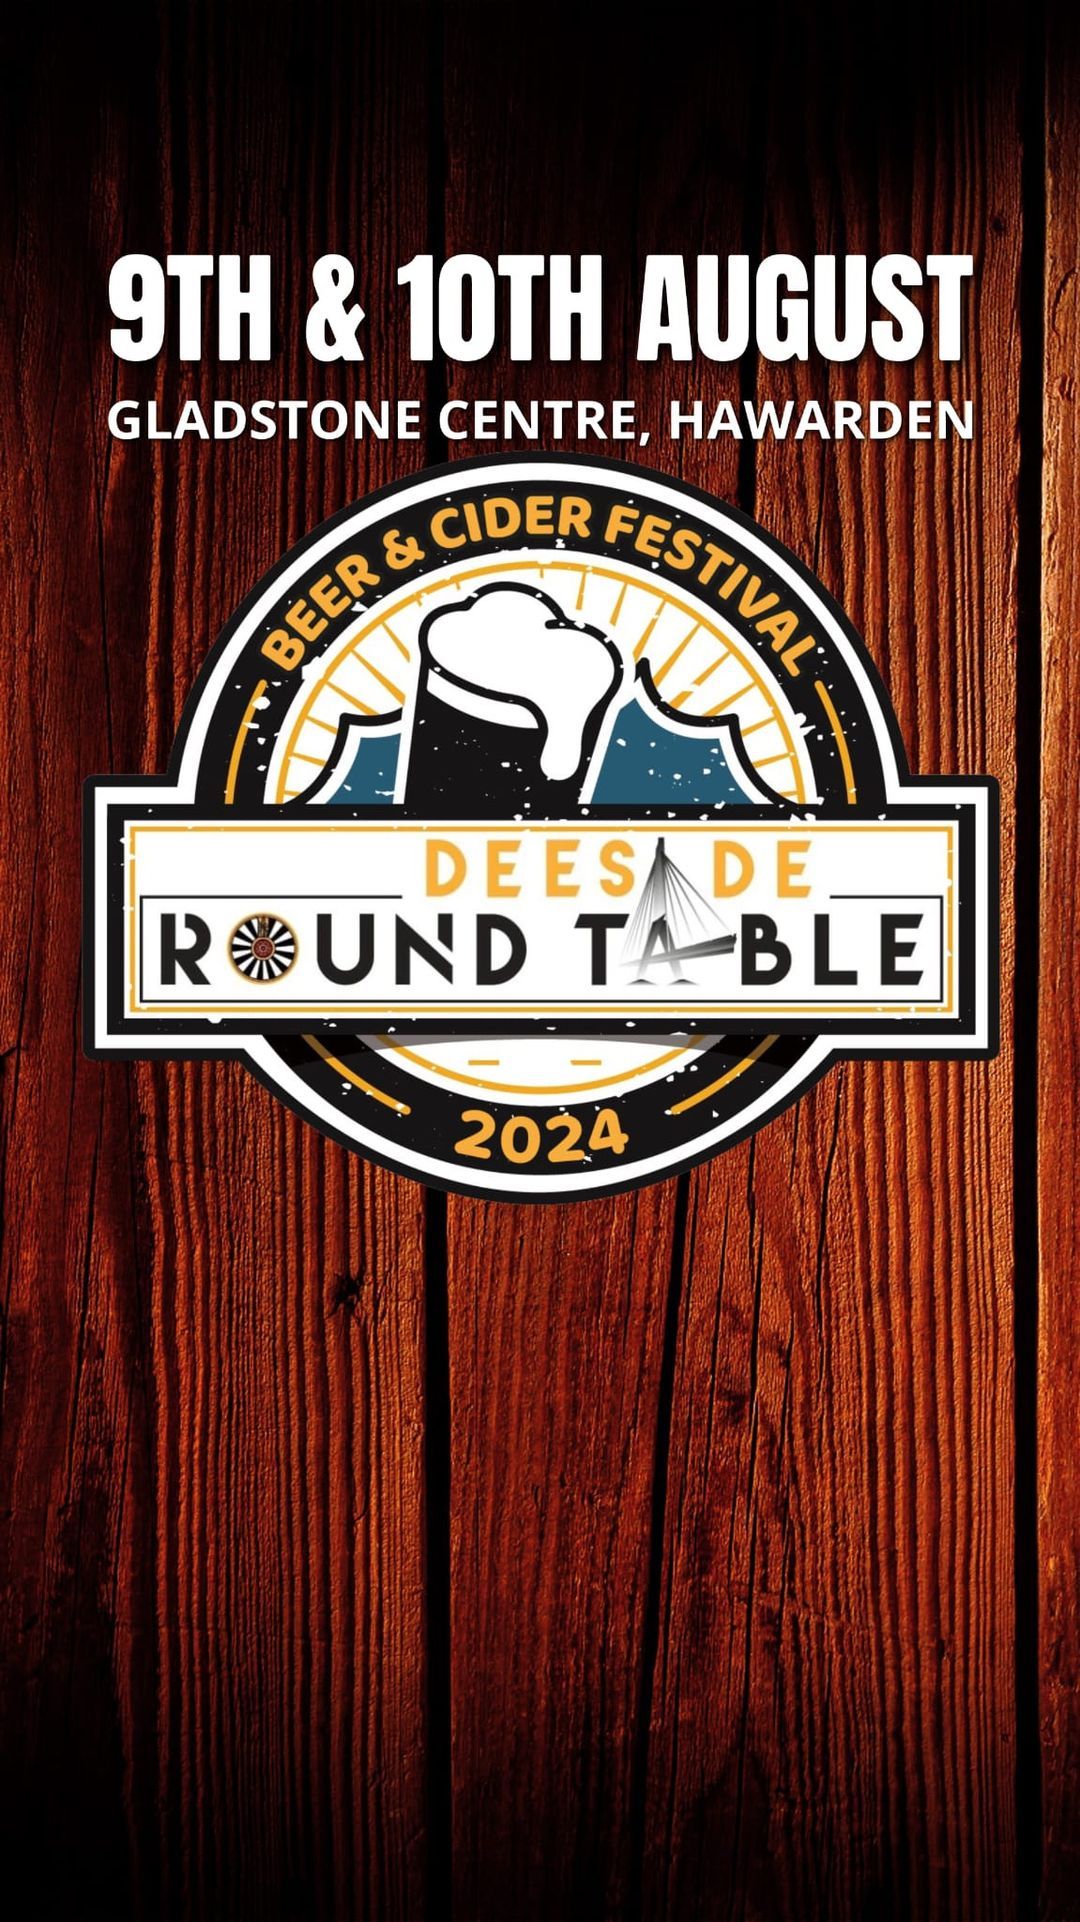 \ud83c\udf7bDeeside Round Table Beer Festival 2024\ud83c\udf7b